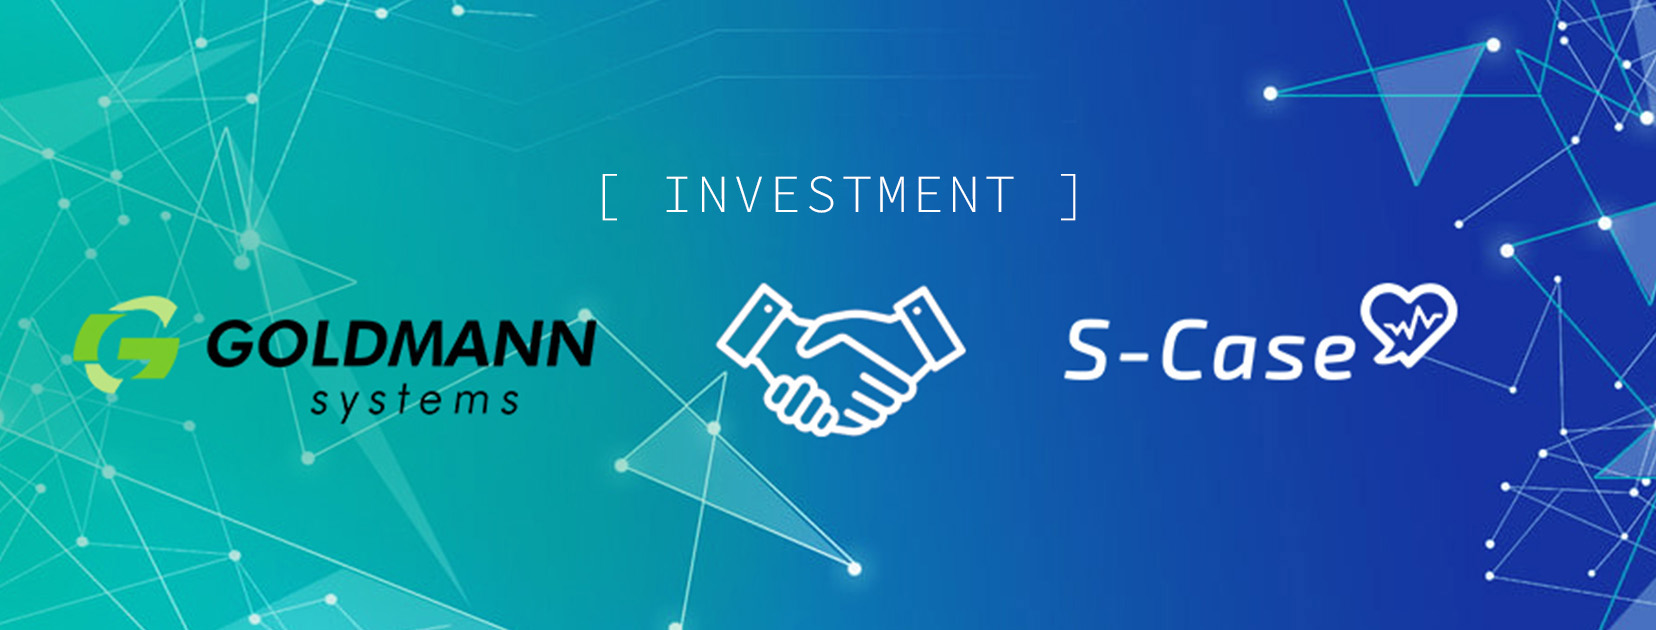 Goldmann Systems investuje do startup projektu S-Case